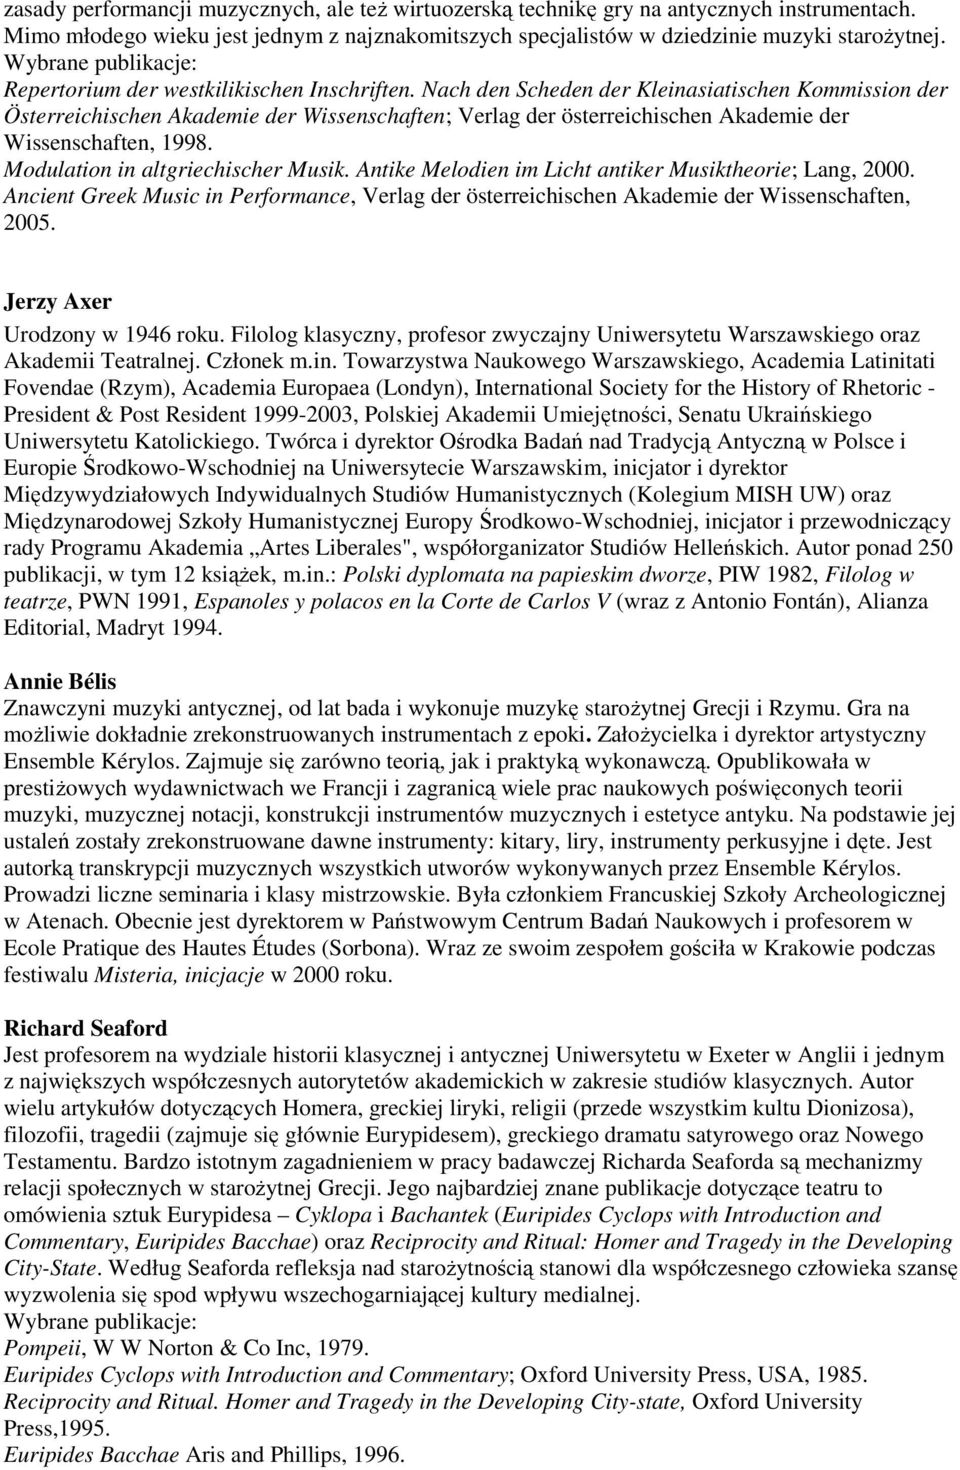 Nach den Scheden der Kleinasiatischen Kommission der Österreichischen Akademie der Wissenschaften; Verlag der österreichischen Akademie der Wissenschaften, 1998. Modulation in altgriechischer Musik.